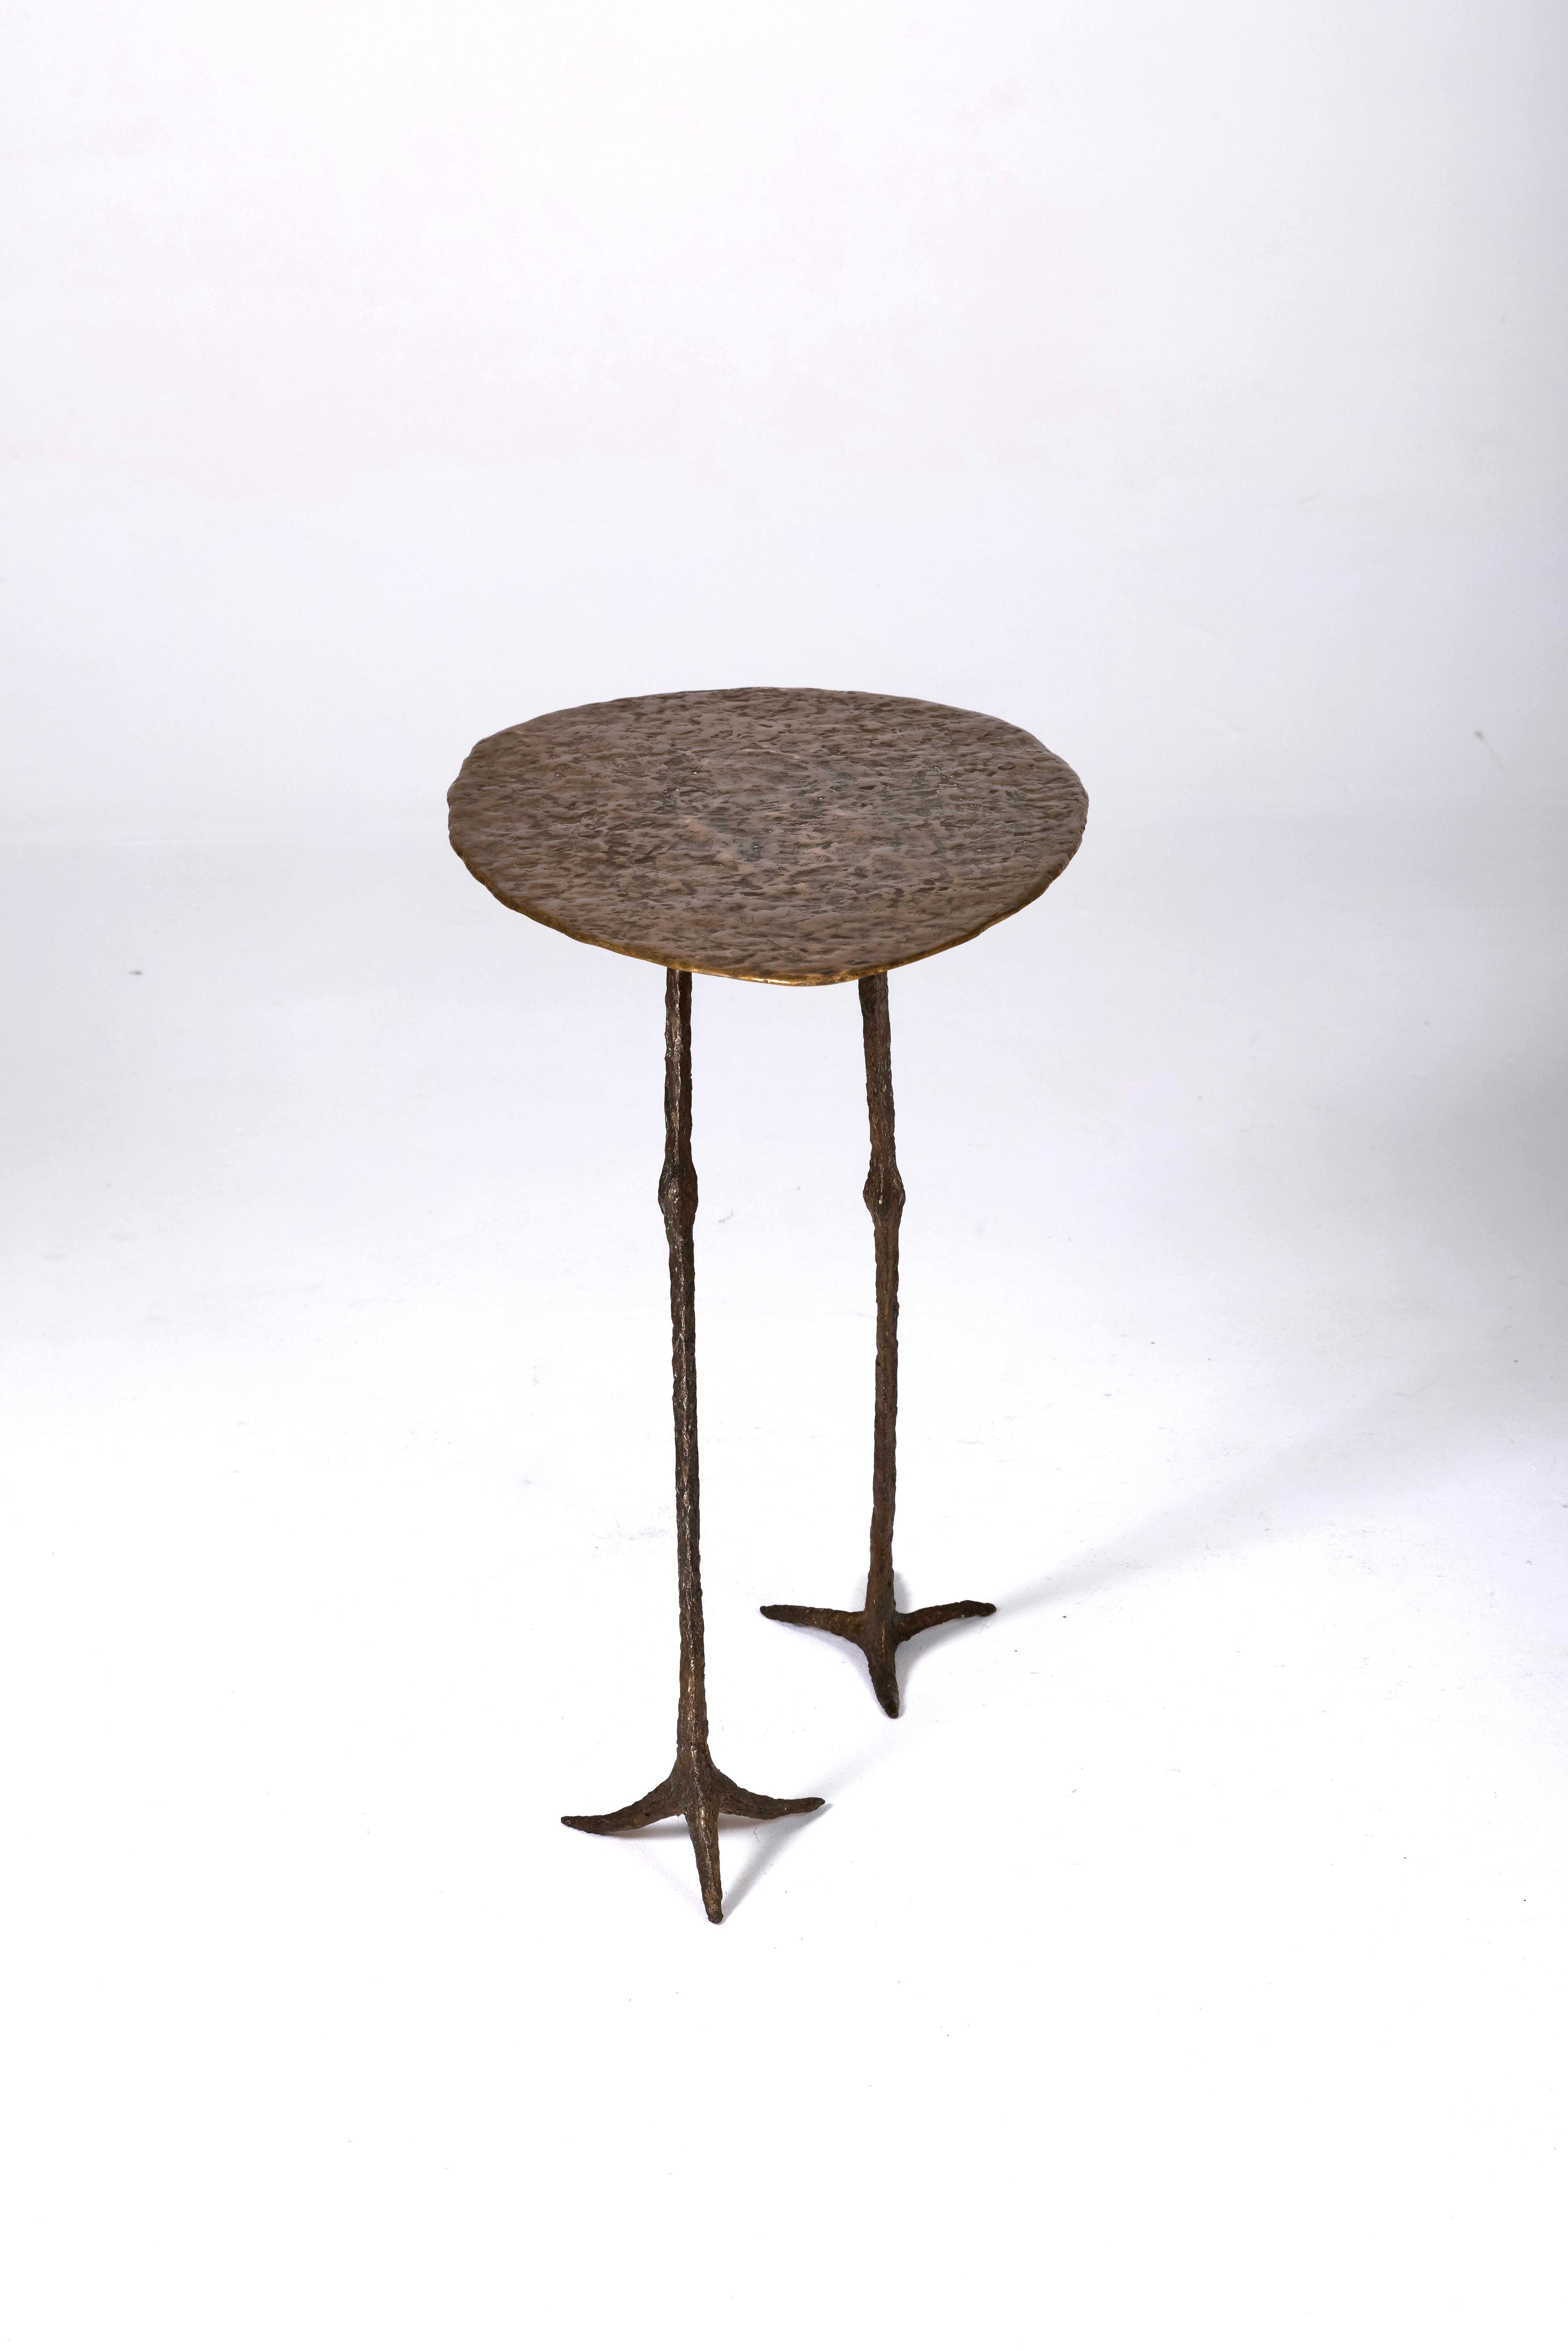 Table d'appoint postmoderne en bronze de la designer sylvie mangaud. Exceptionnelle table à base zoomorphe. Cette table n'existe qu'en 10 exemplaires, elle est numérotée et signée.

LP1308